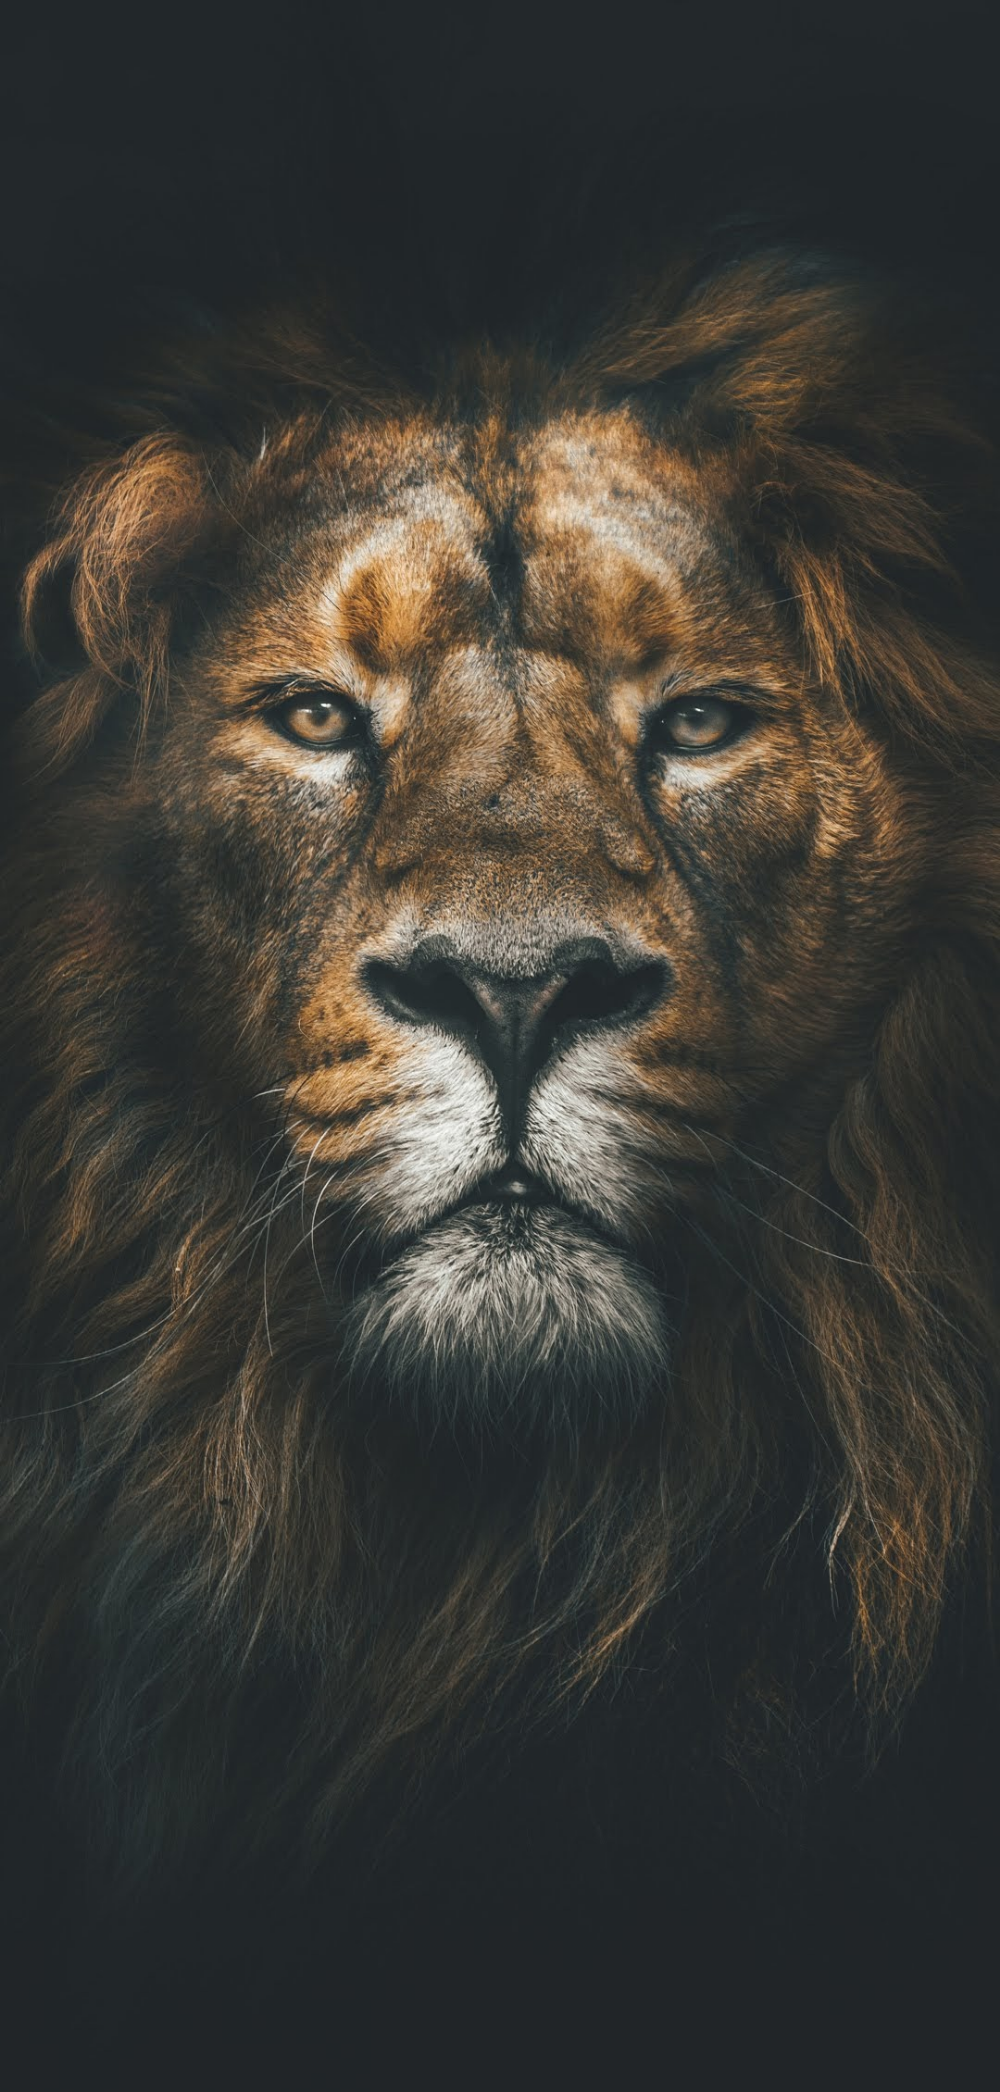 Full HD Lion Wallpaper For Mobile